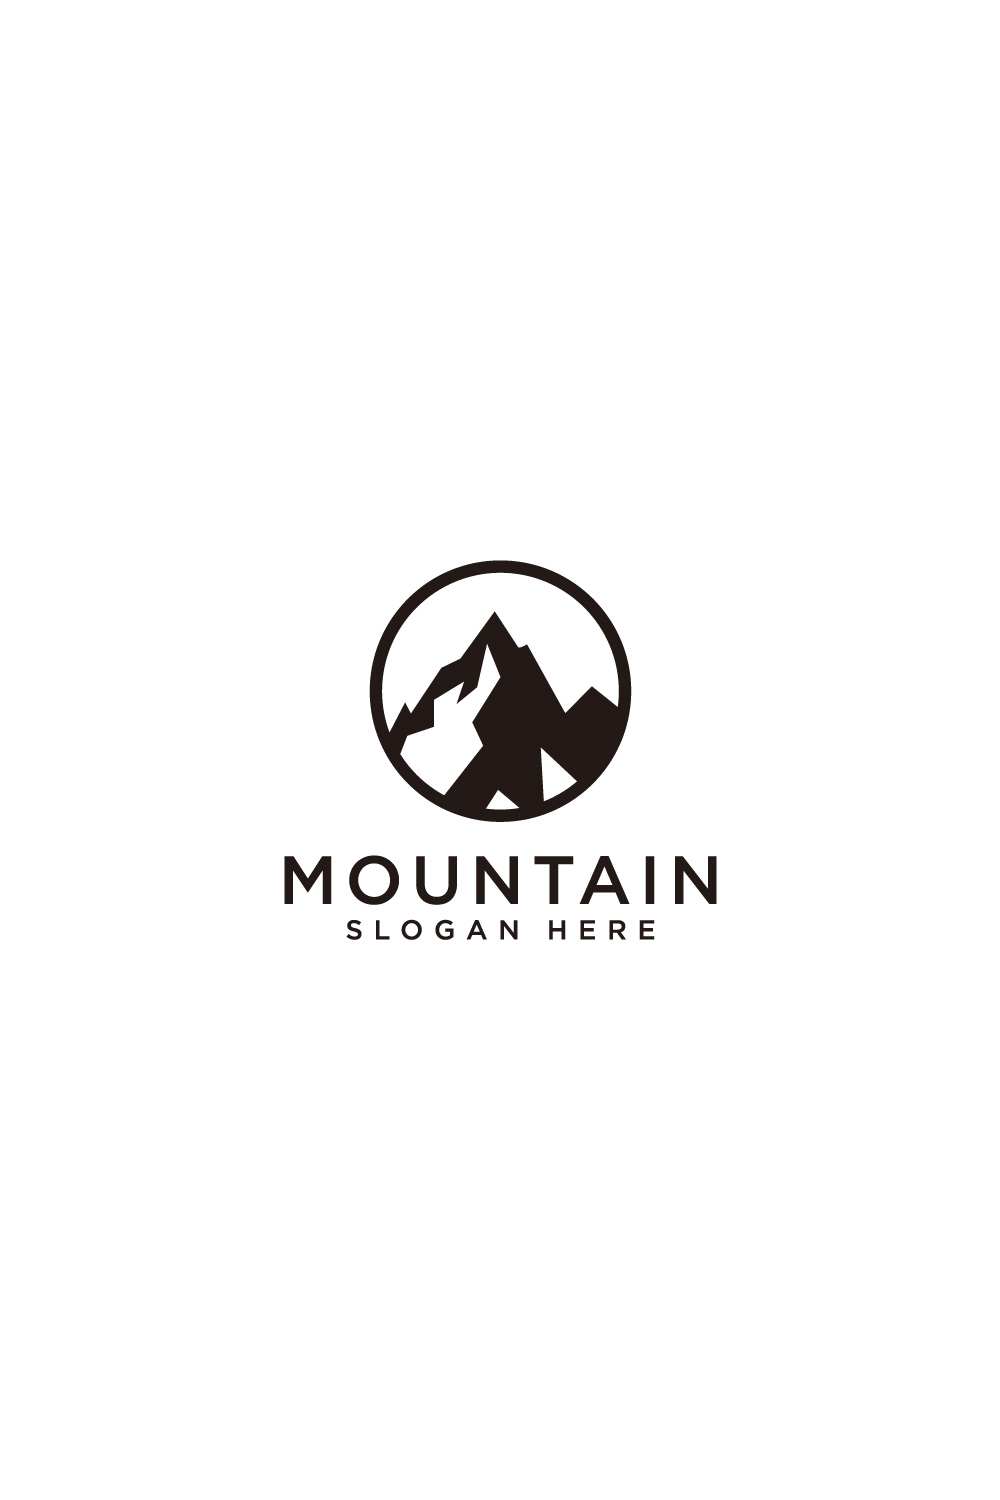 mountain logo vector design pinterest preview image.